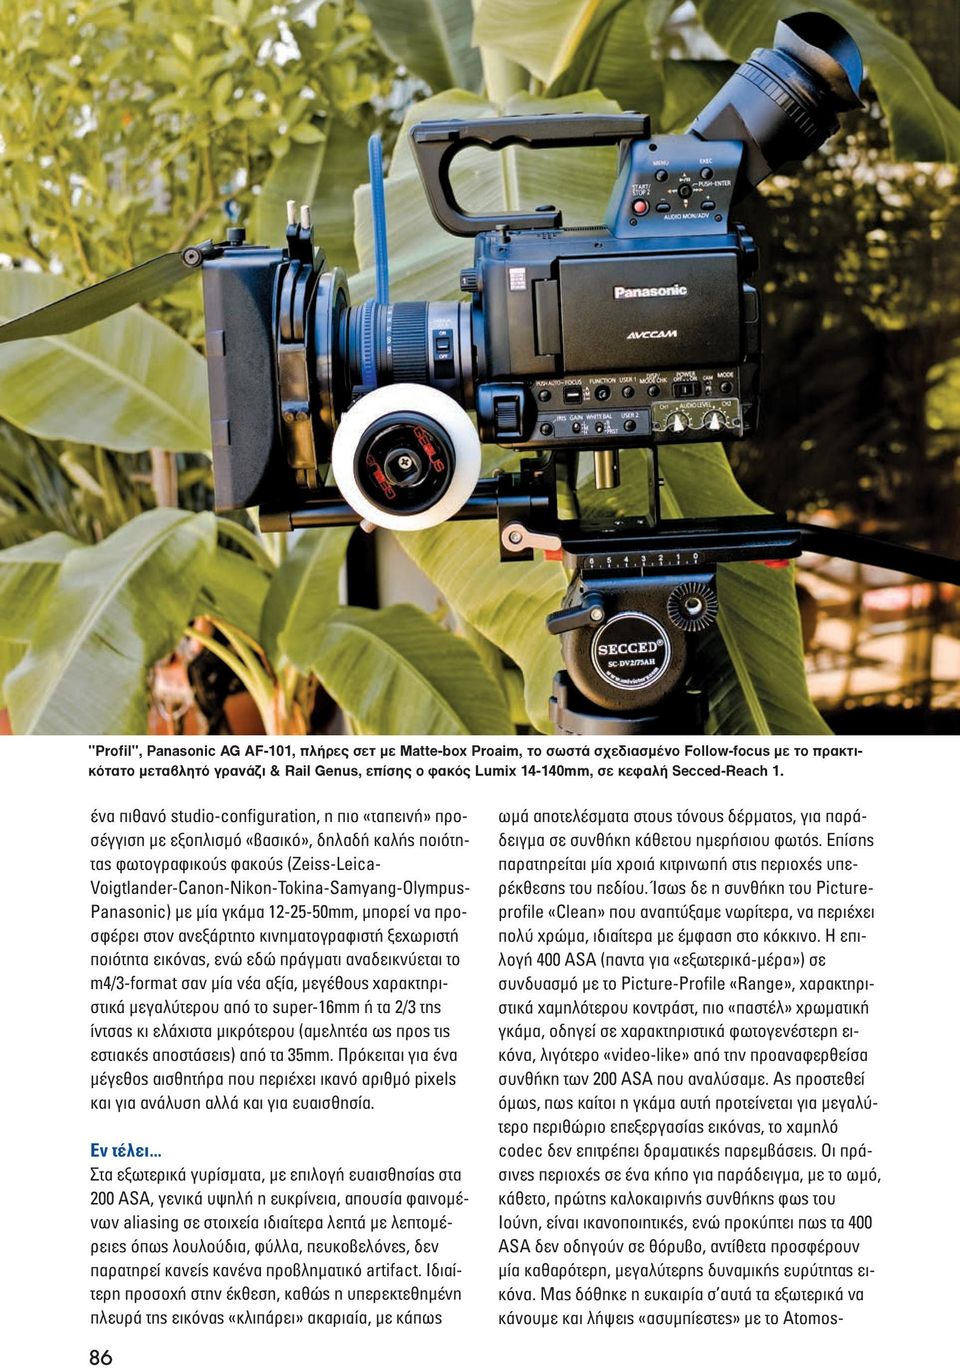 ένα πιθανό studio-configuration, η πιο «ταπεινή» προσέγγιση µε εξοπλισµό «βασικό», δηλαδή καλής ποιότητας φωτογραφικούς φακούς (Zeiss-Leica- Voigtlander-Canon-Nikon-Tokina-Samyang-Olympus- Panasonic)